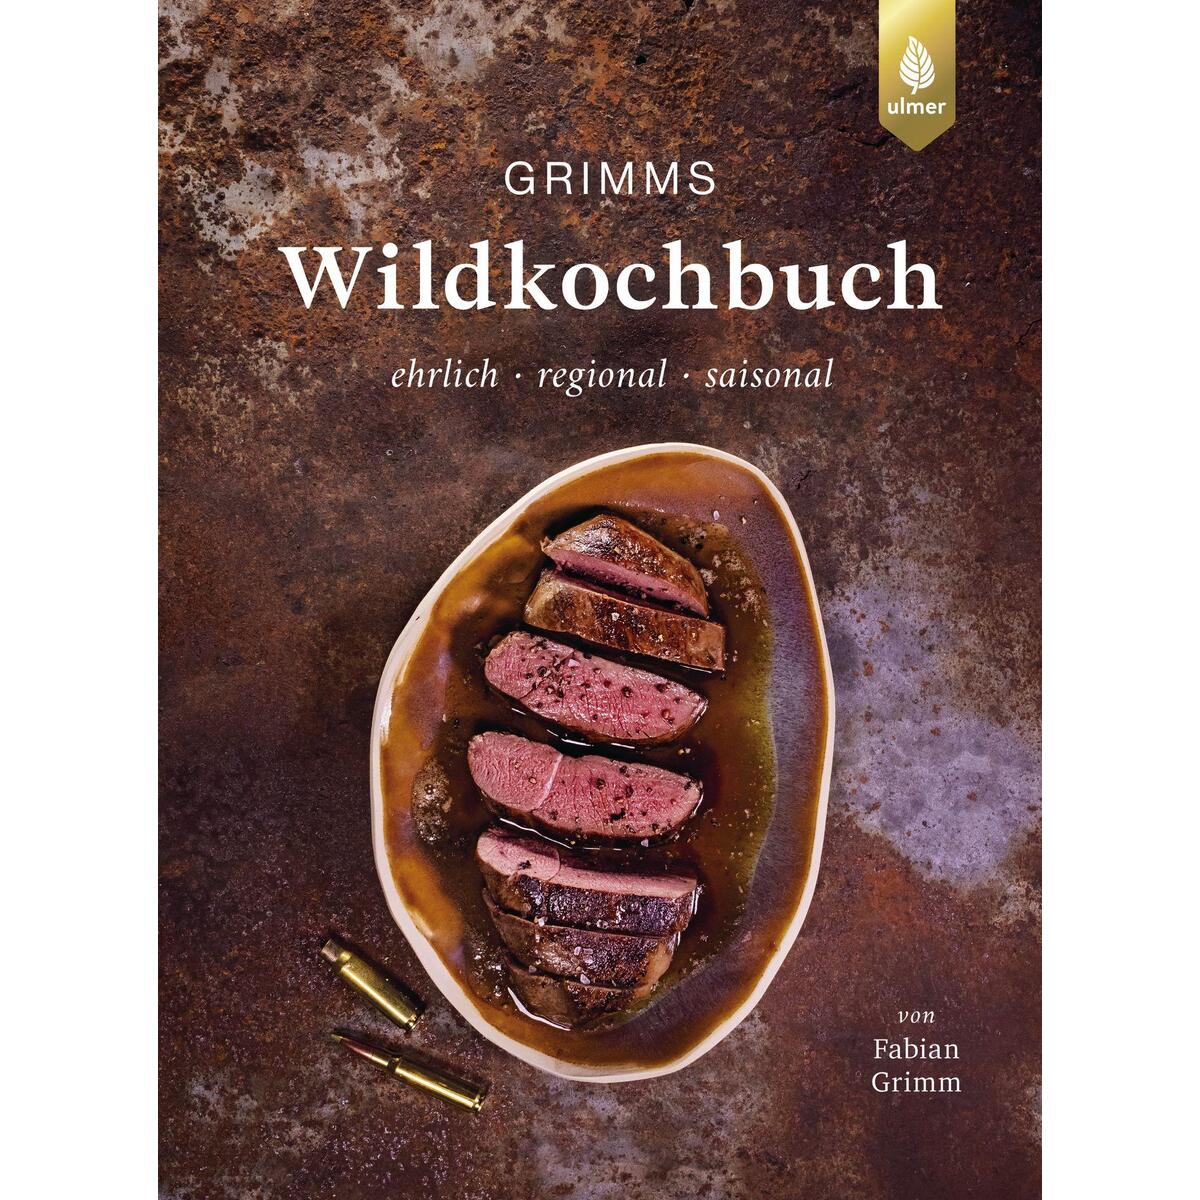 Grimms Wildkochbuch von Ulmer Eugen Verlag